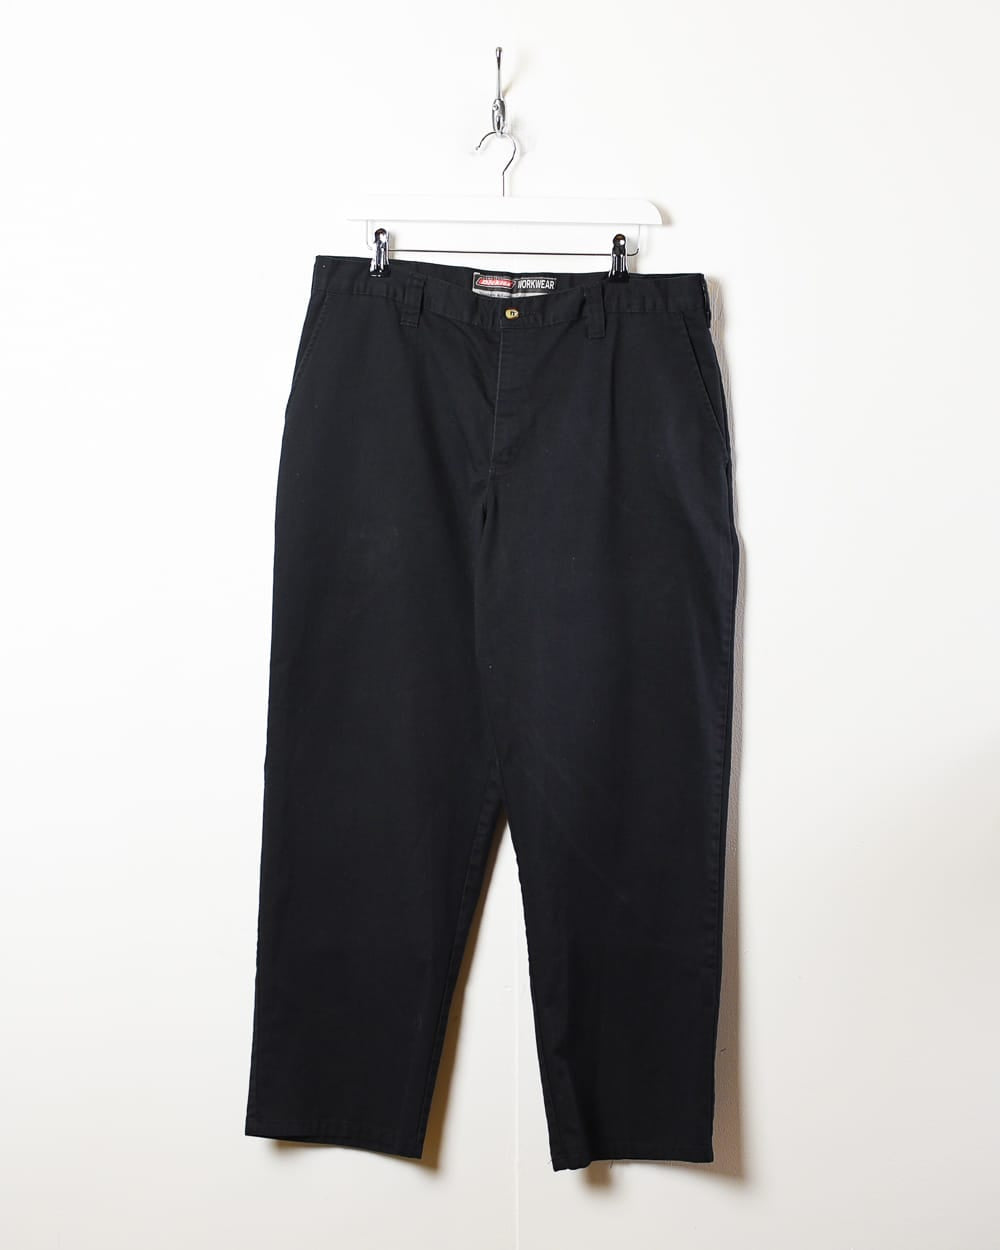 Black dickies Workwear Trousers - W36 L30